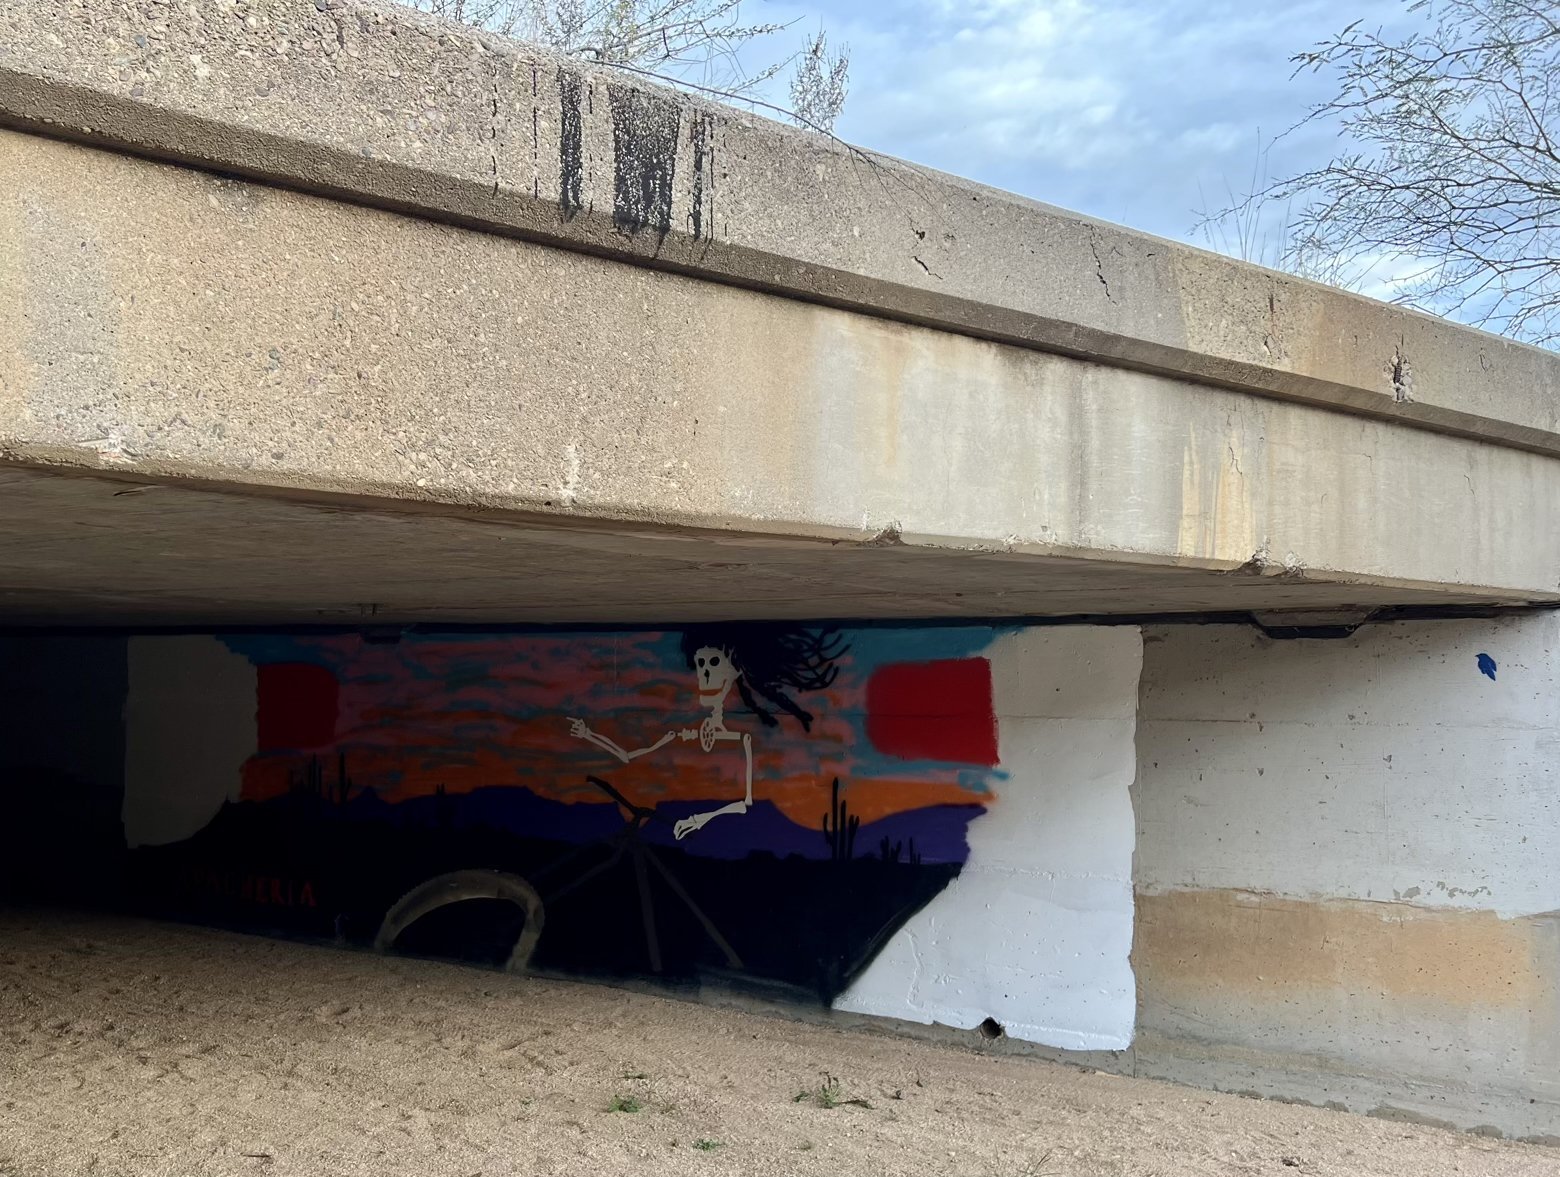 Underpass mural